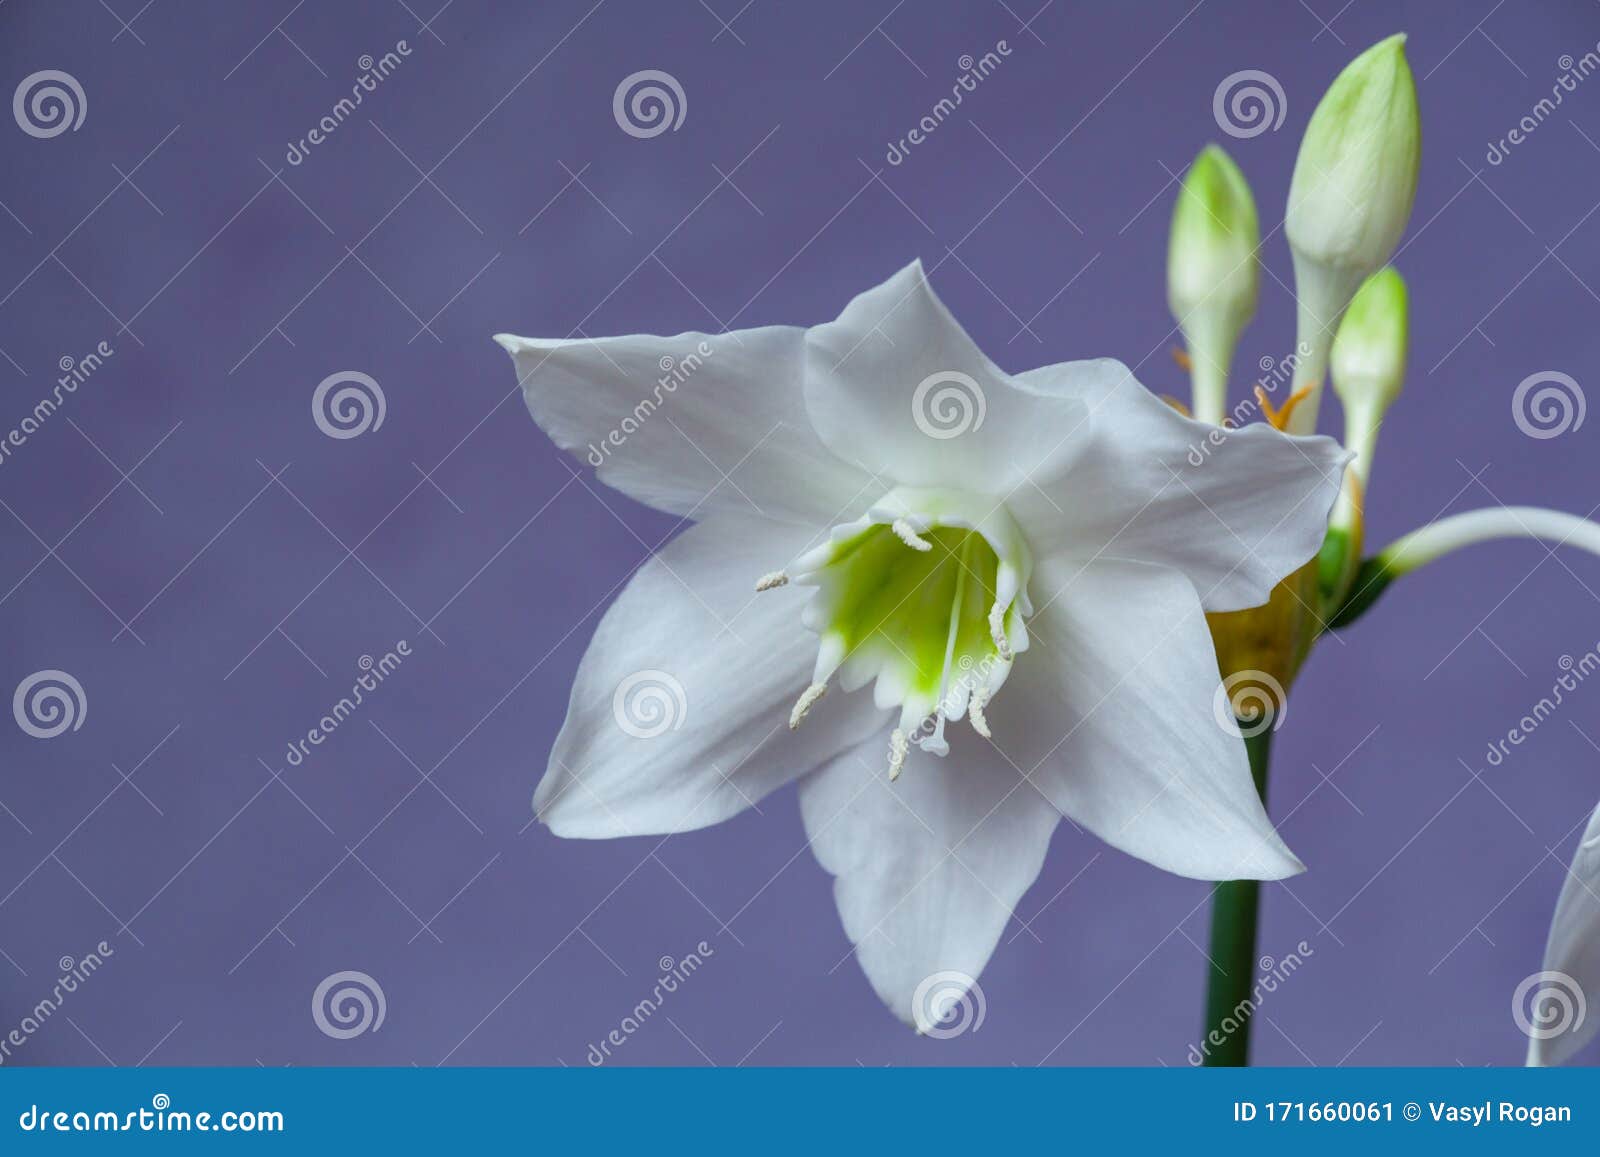 美丽的尤恰里斯 英文名亚马逊百合 蓝色背景下的花朵特写库存图片 图片包括有生活 礼品